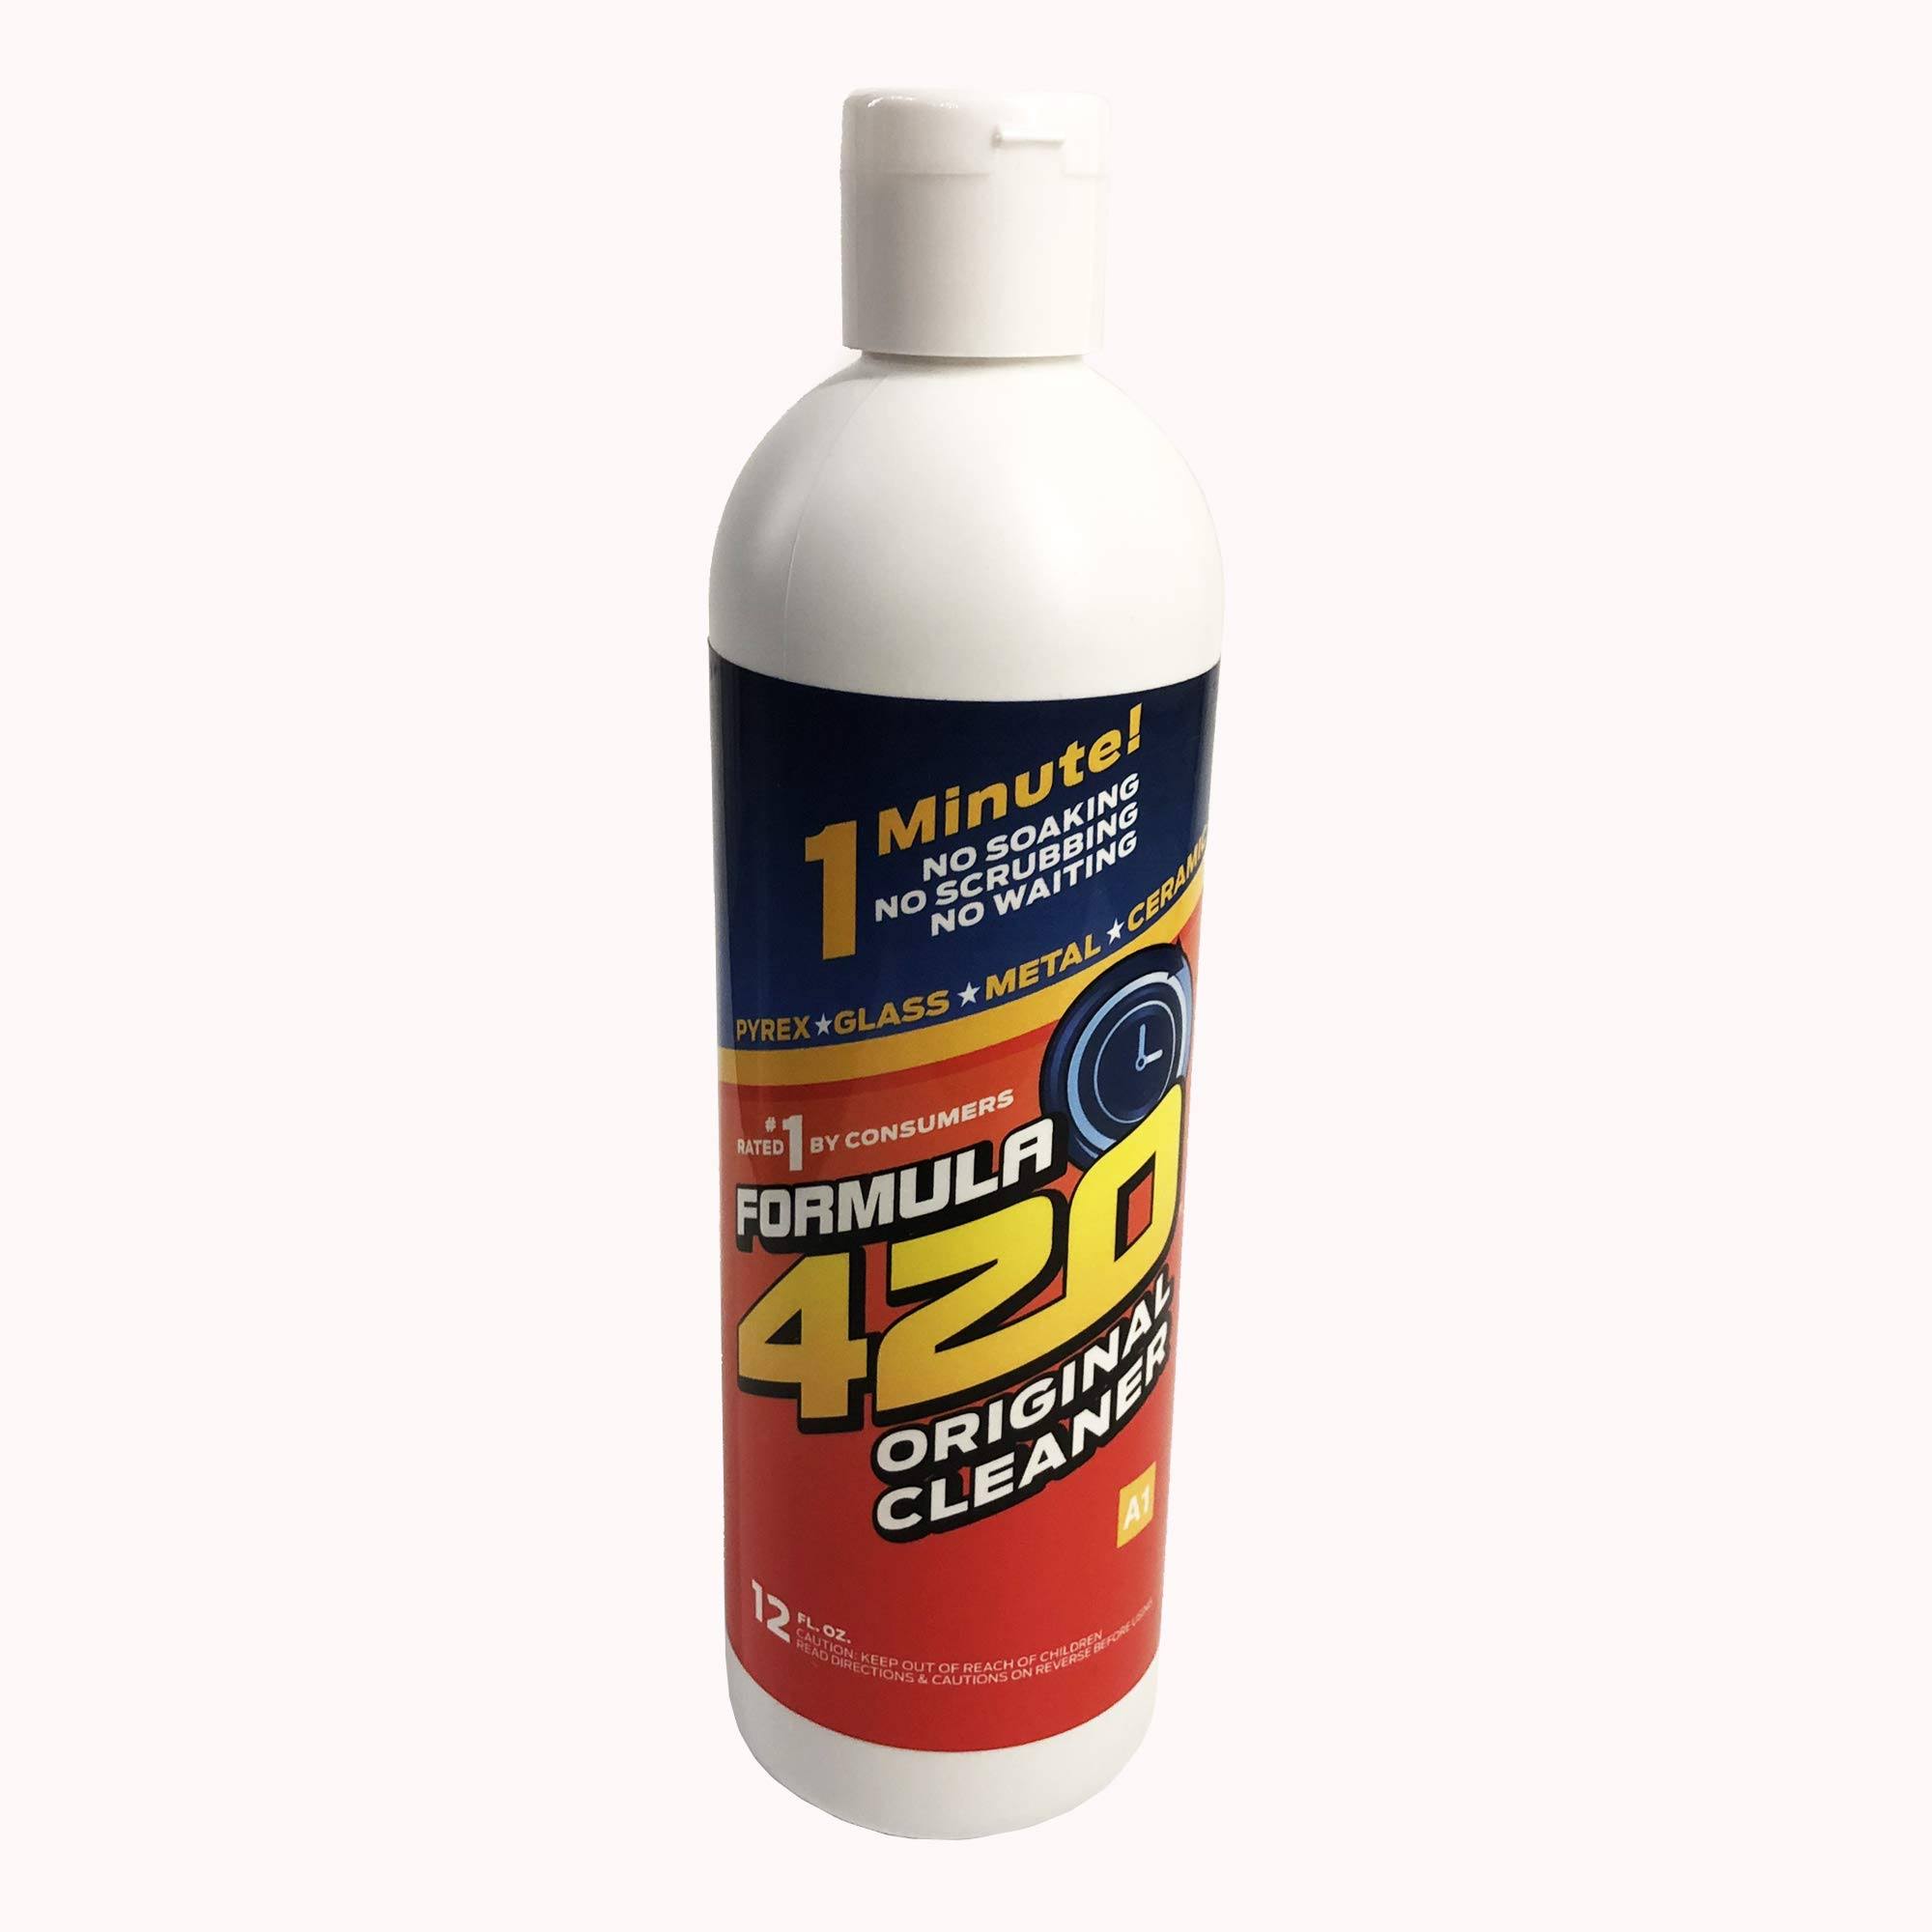 Formula 710 Instant Cleaner 12oz